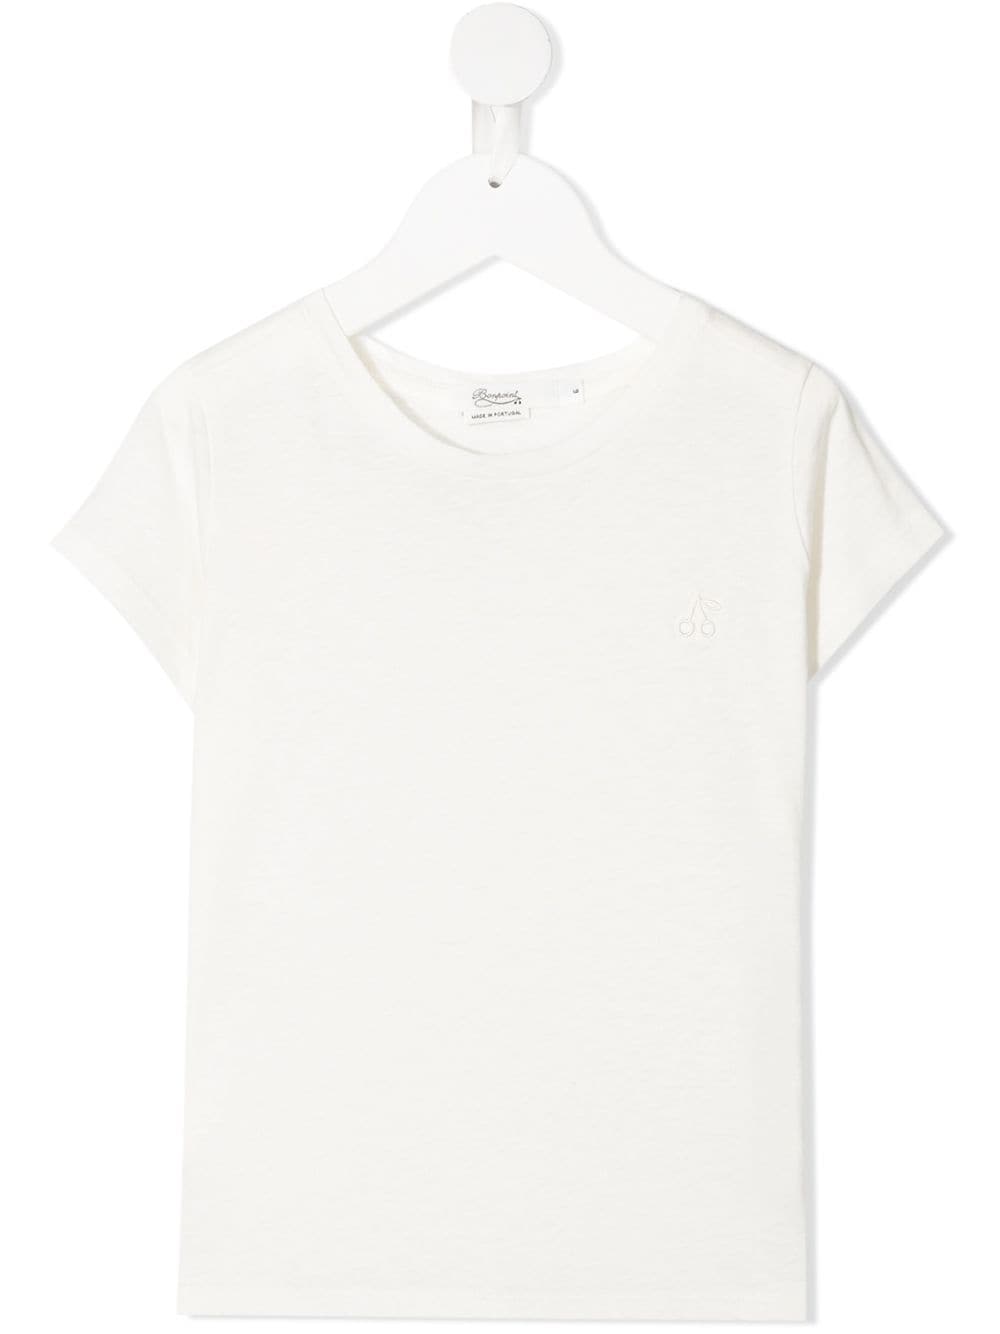 Bonpoint plain cotton T-shirt - White von Bonpoint